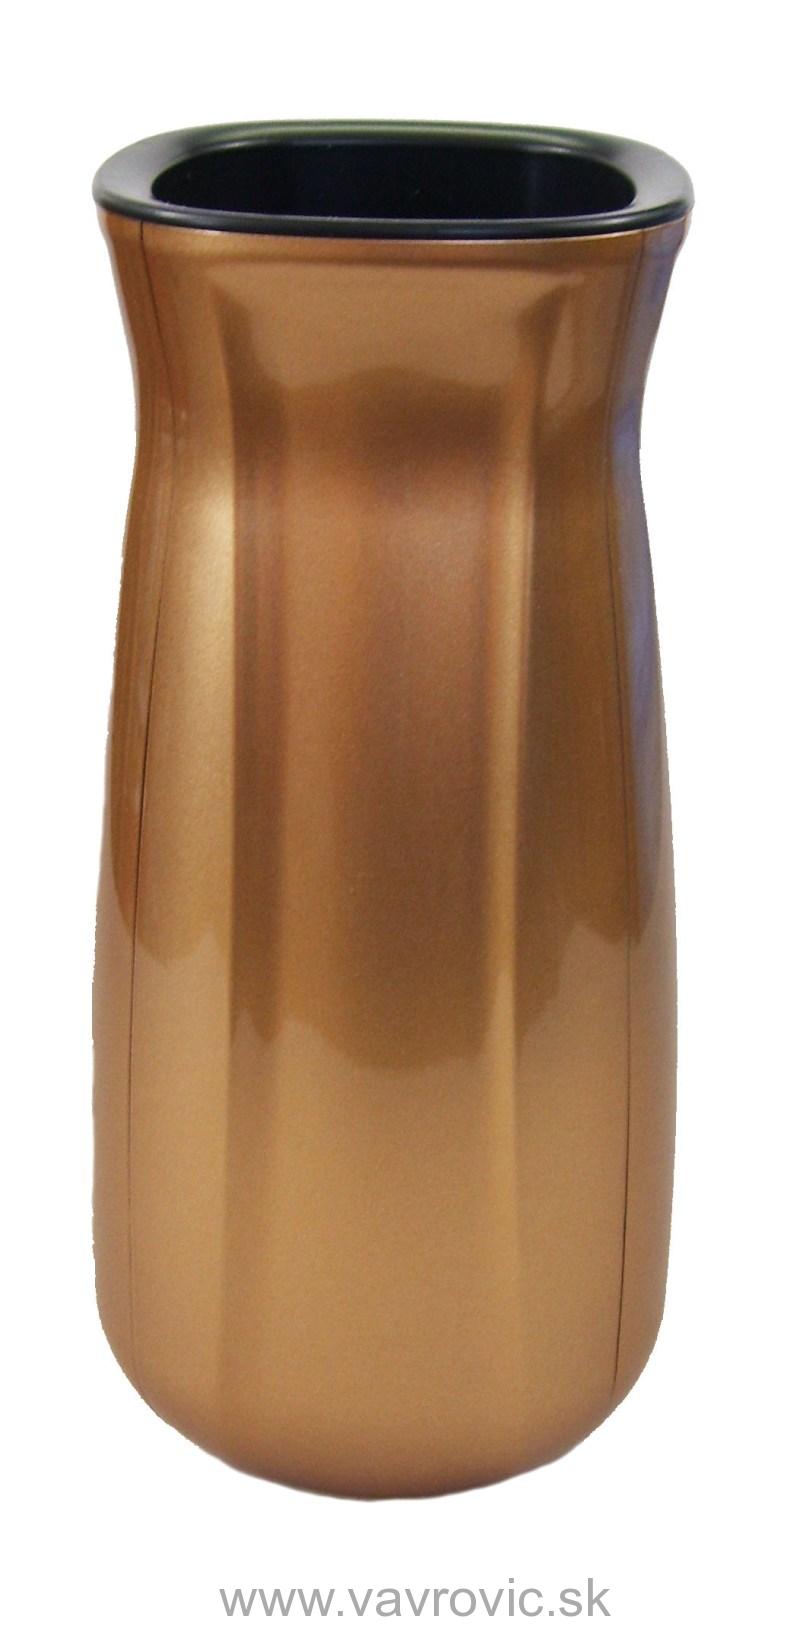 Náhrobná váza V4 - zlato - metalická farba / štvorhranná oblá